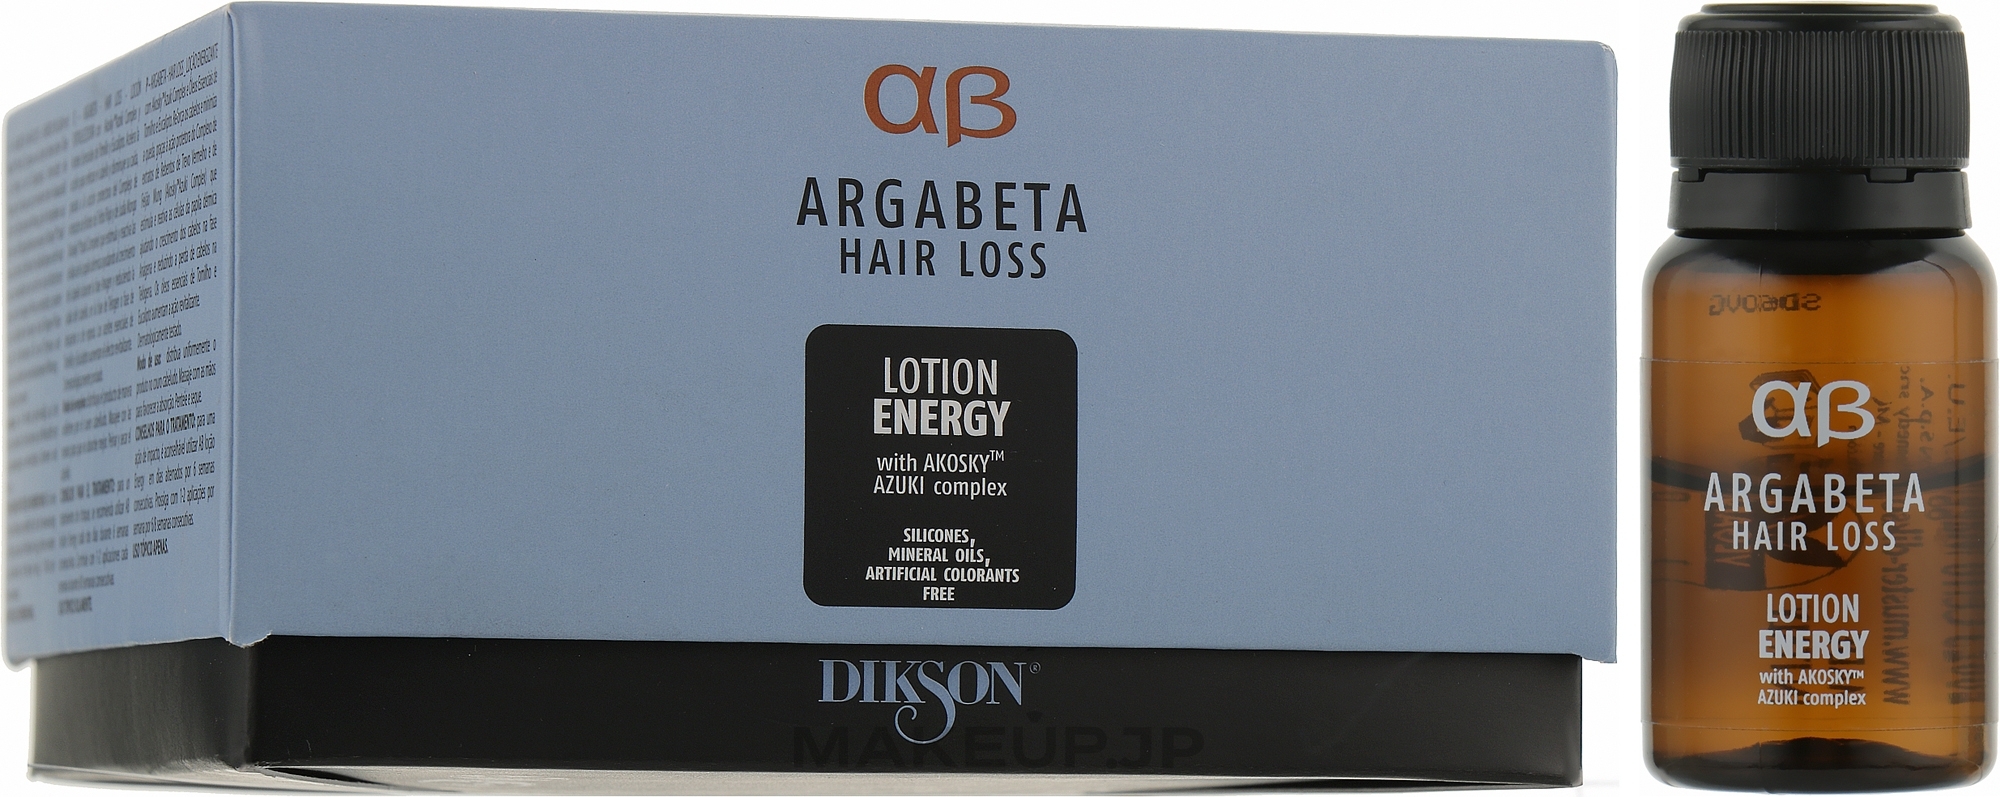 Anti Hair Loss Lotion - Dikson Argabeta Hair Loss Lozione Energy — photo 8 x 8 ml